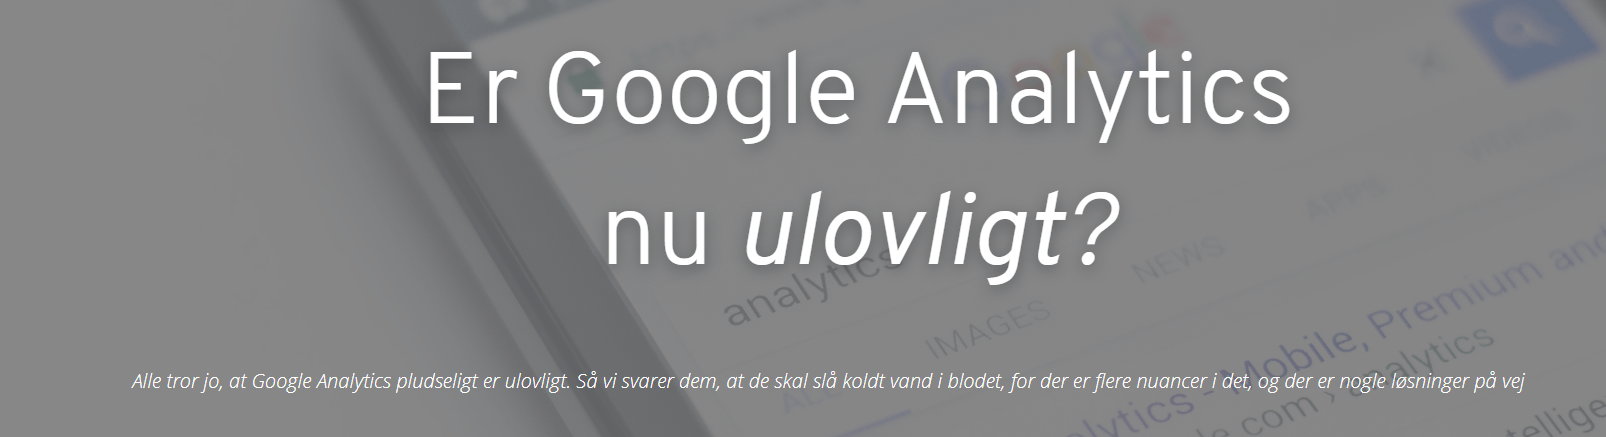 Er Google Analytics i virkeligheden nu ulovligt? Læs mere her